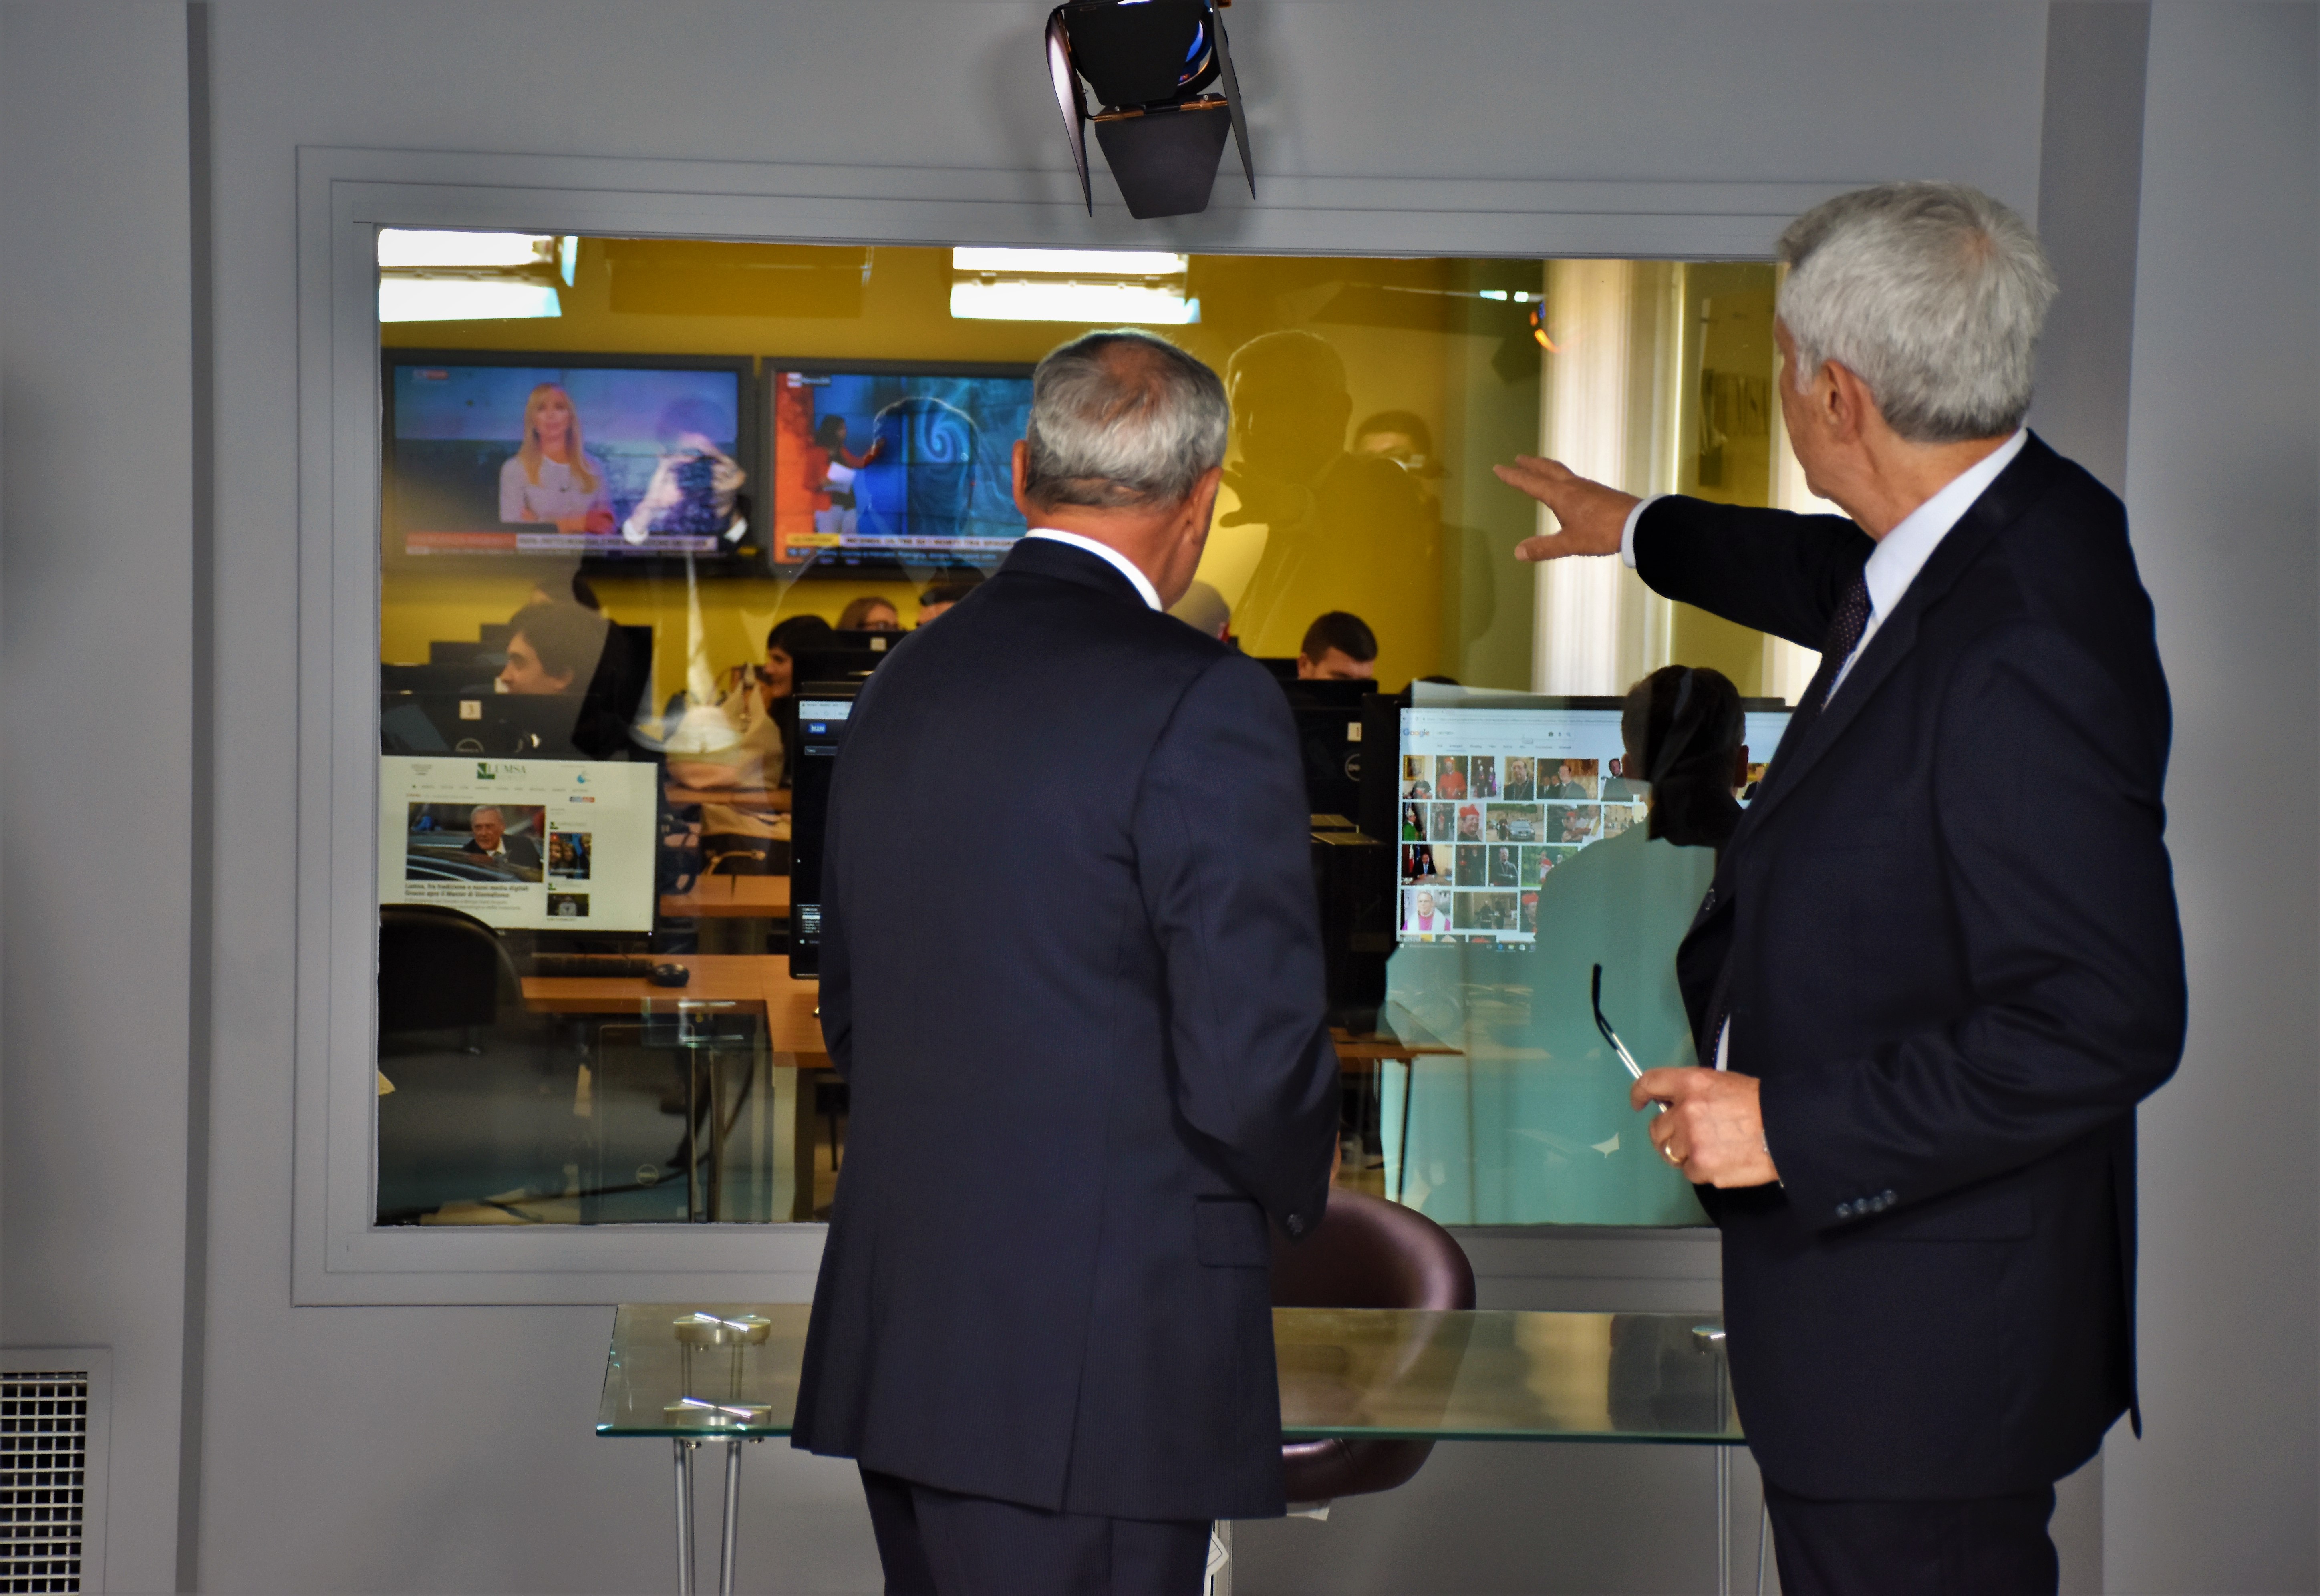 Una parete a vetro, alle spalle di chi conduce il Tg, congiunge lo studio televisivo alla redazione Lumsanews